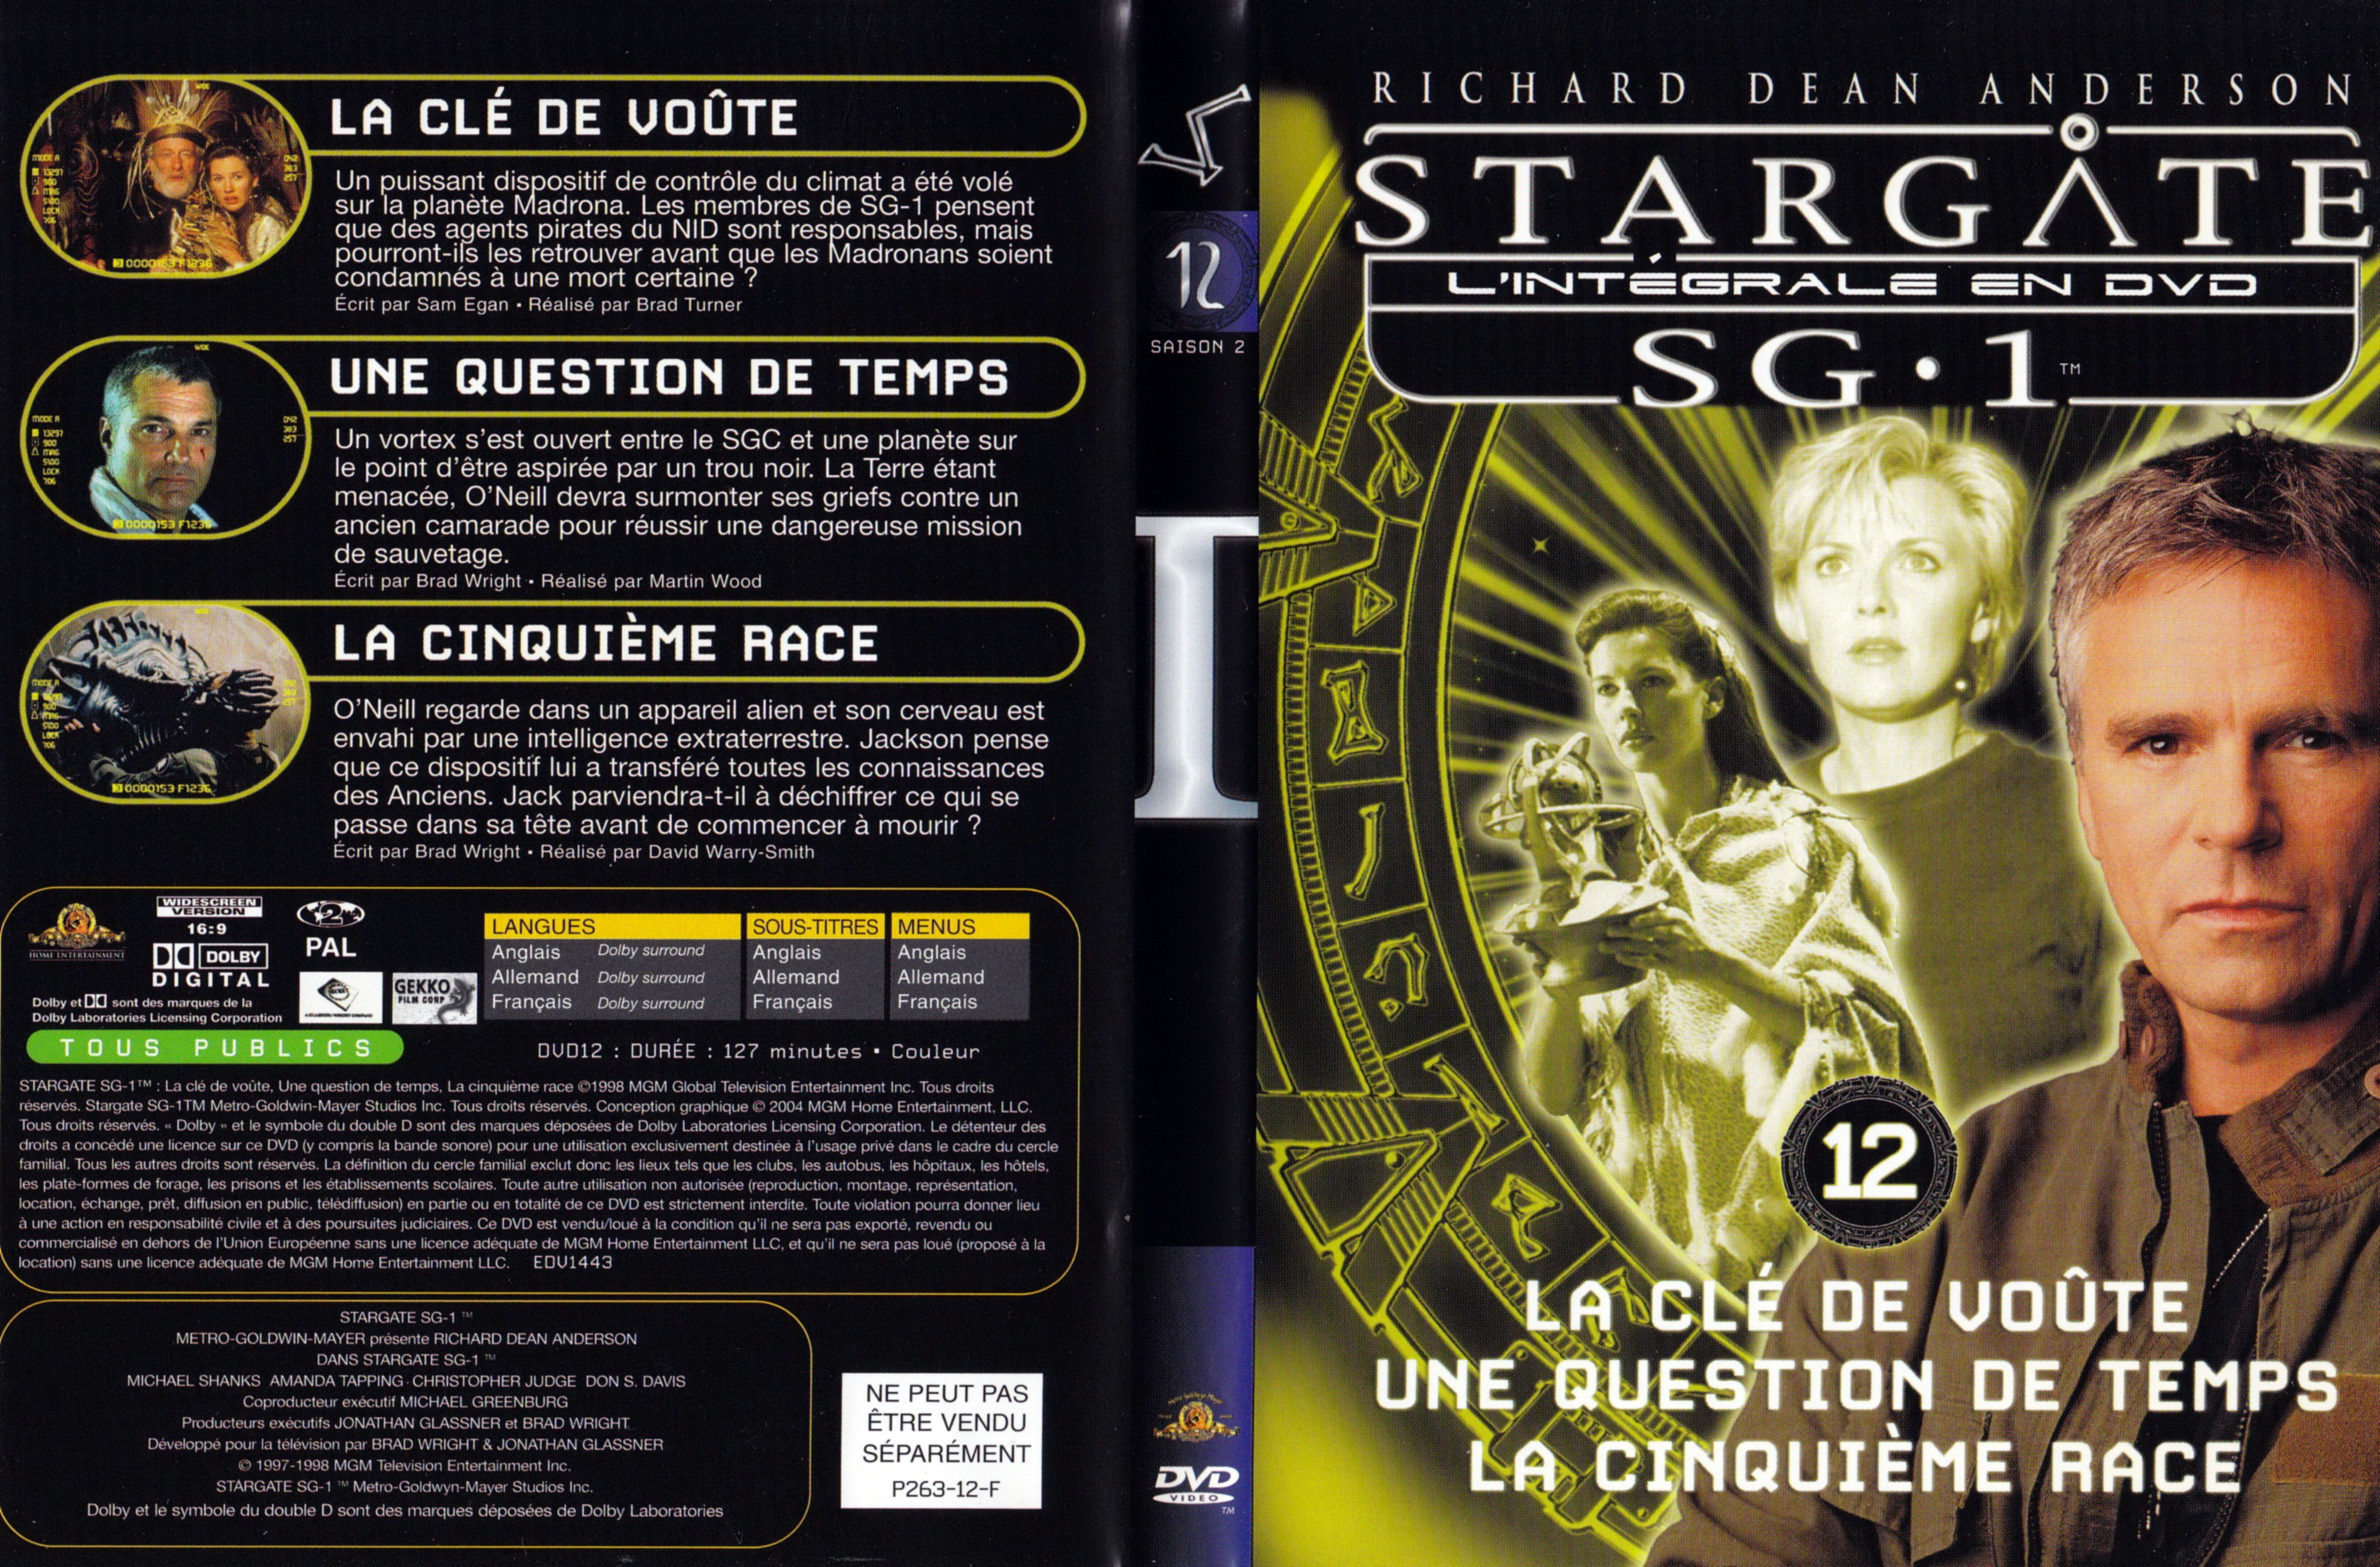 Jaquette DVD Stargate SG1 Intgrale Saison 2 vol 12